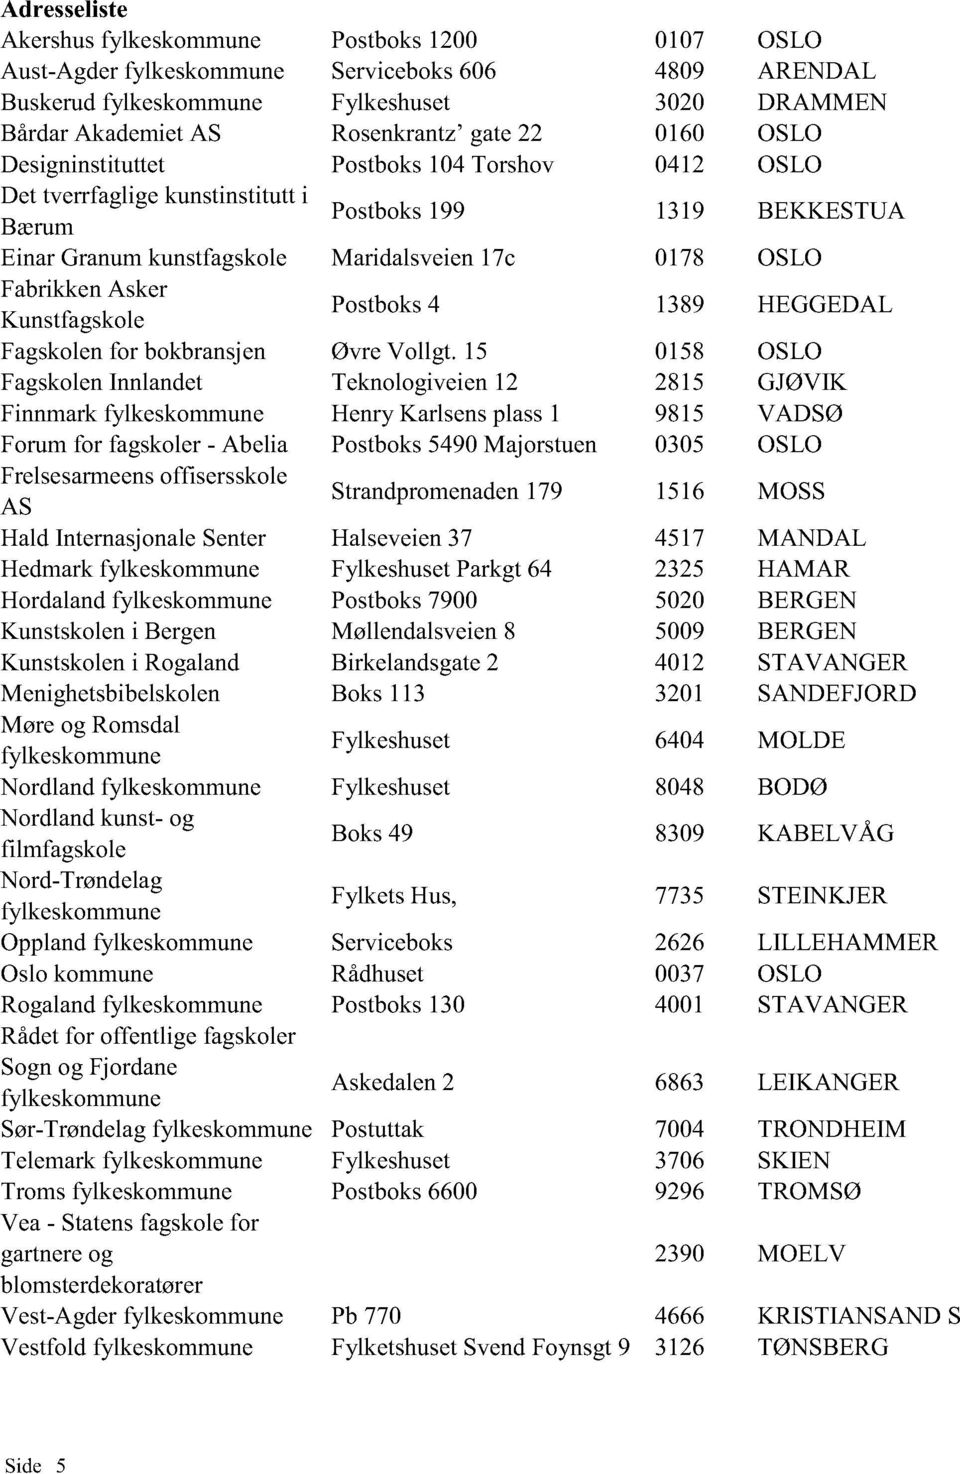 Asker Kunstfagskole Postboks 4 1389 HEGGEDAL Fagskolen for bokbransjen Øvre Vollgt.